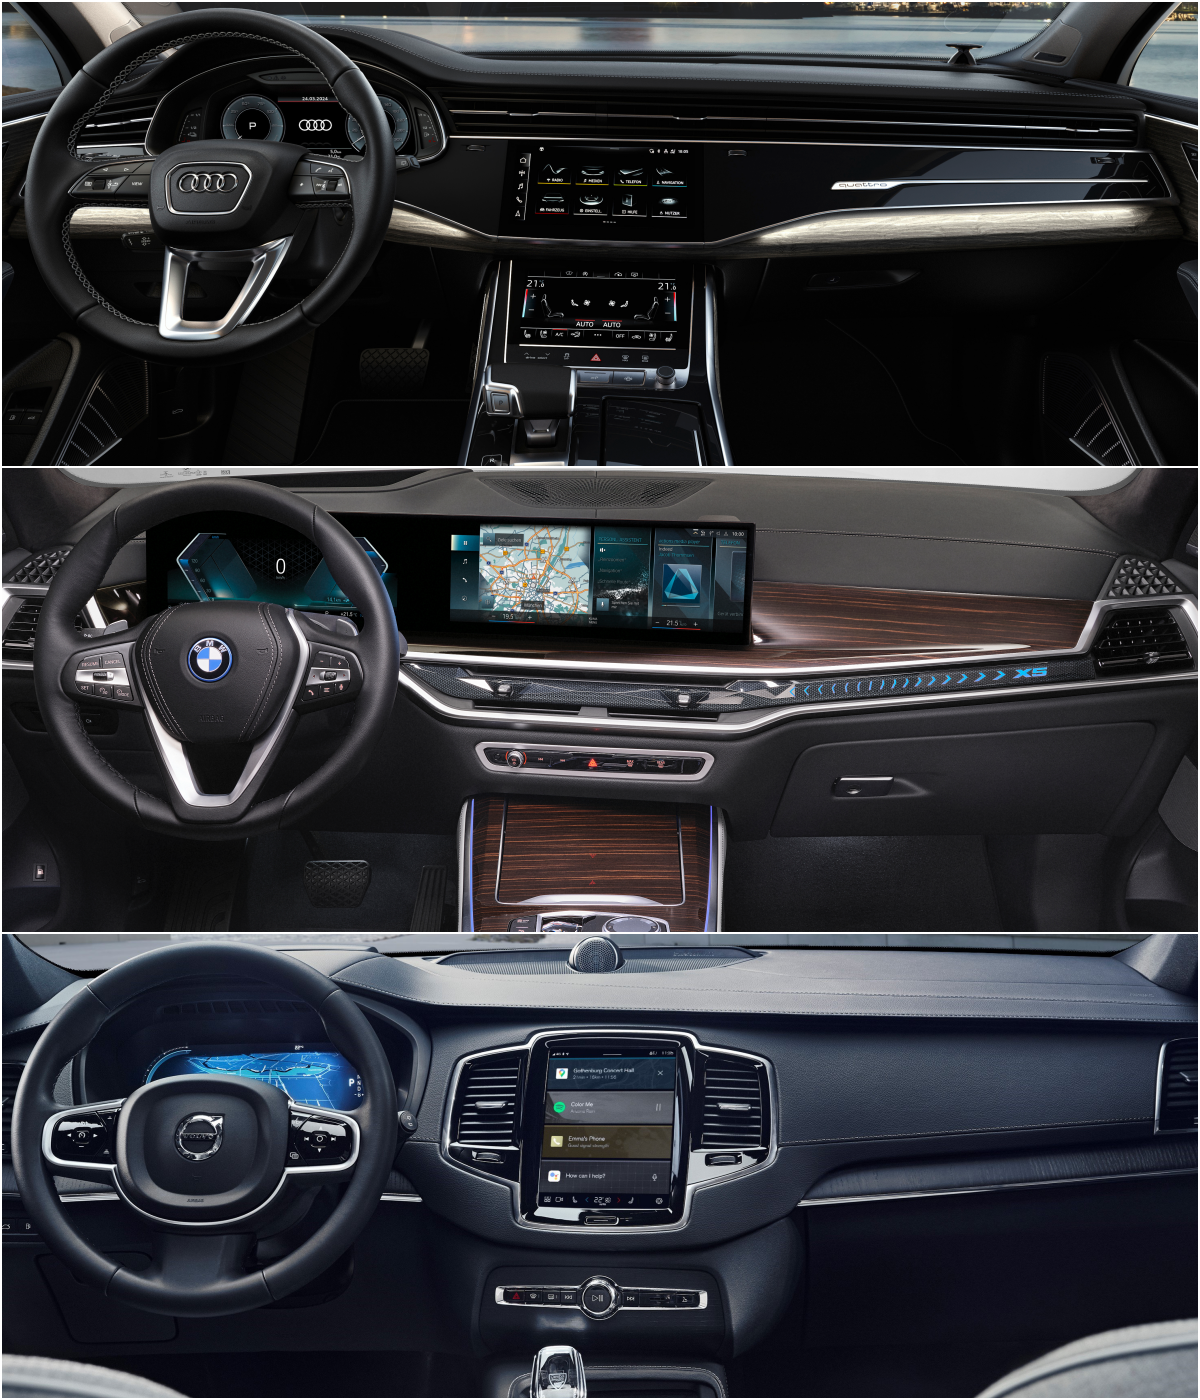 아우디 Q7, BMW X5, 볼보 XC90 차량 '내부' 운전석 이미지이다.